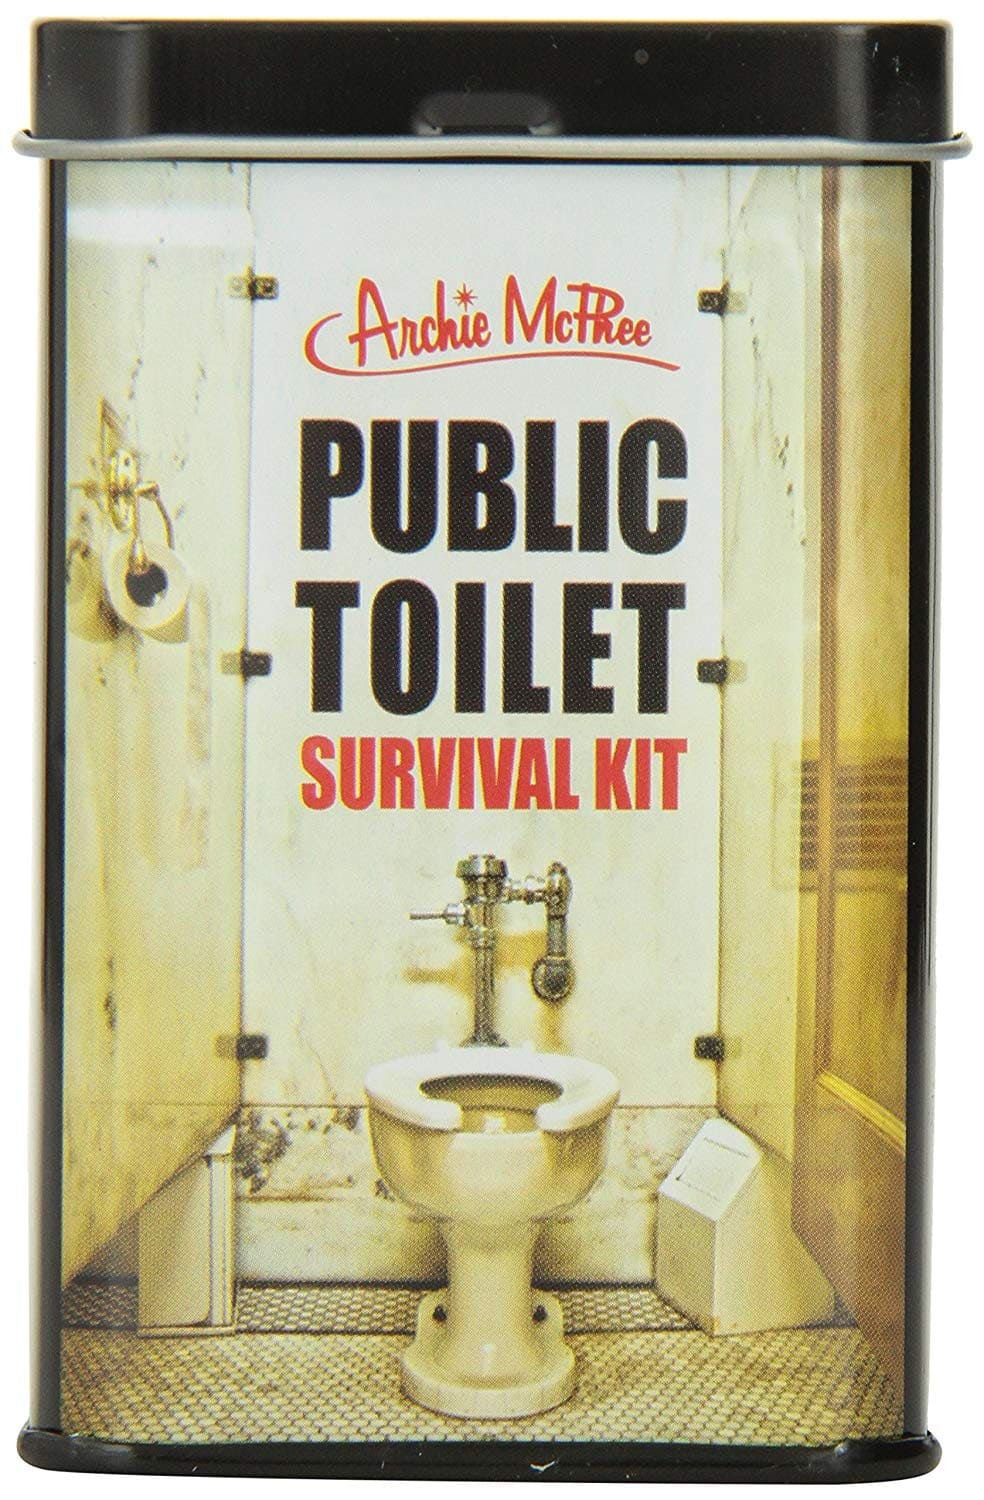 Public toilet survival kit from Amazon.